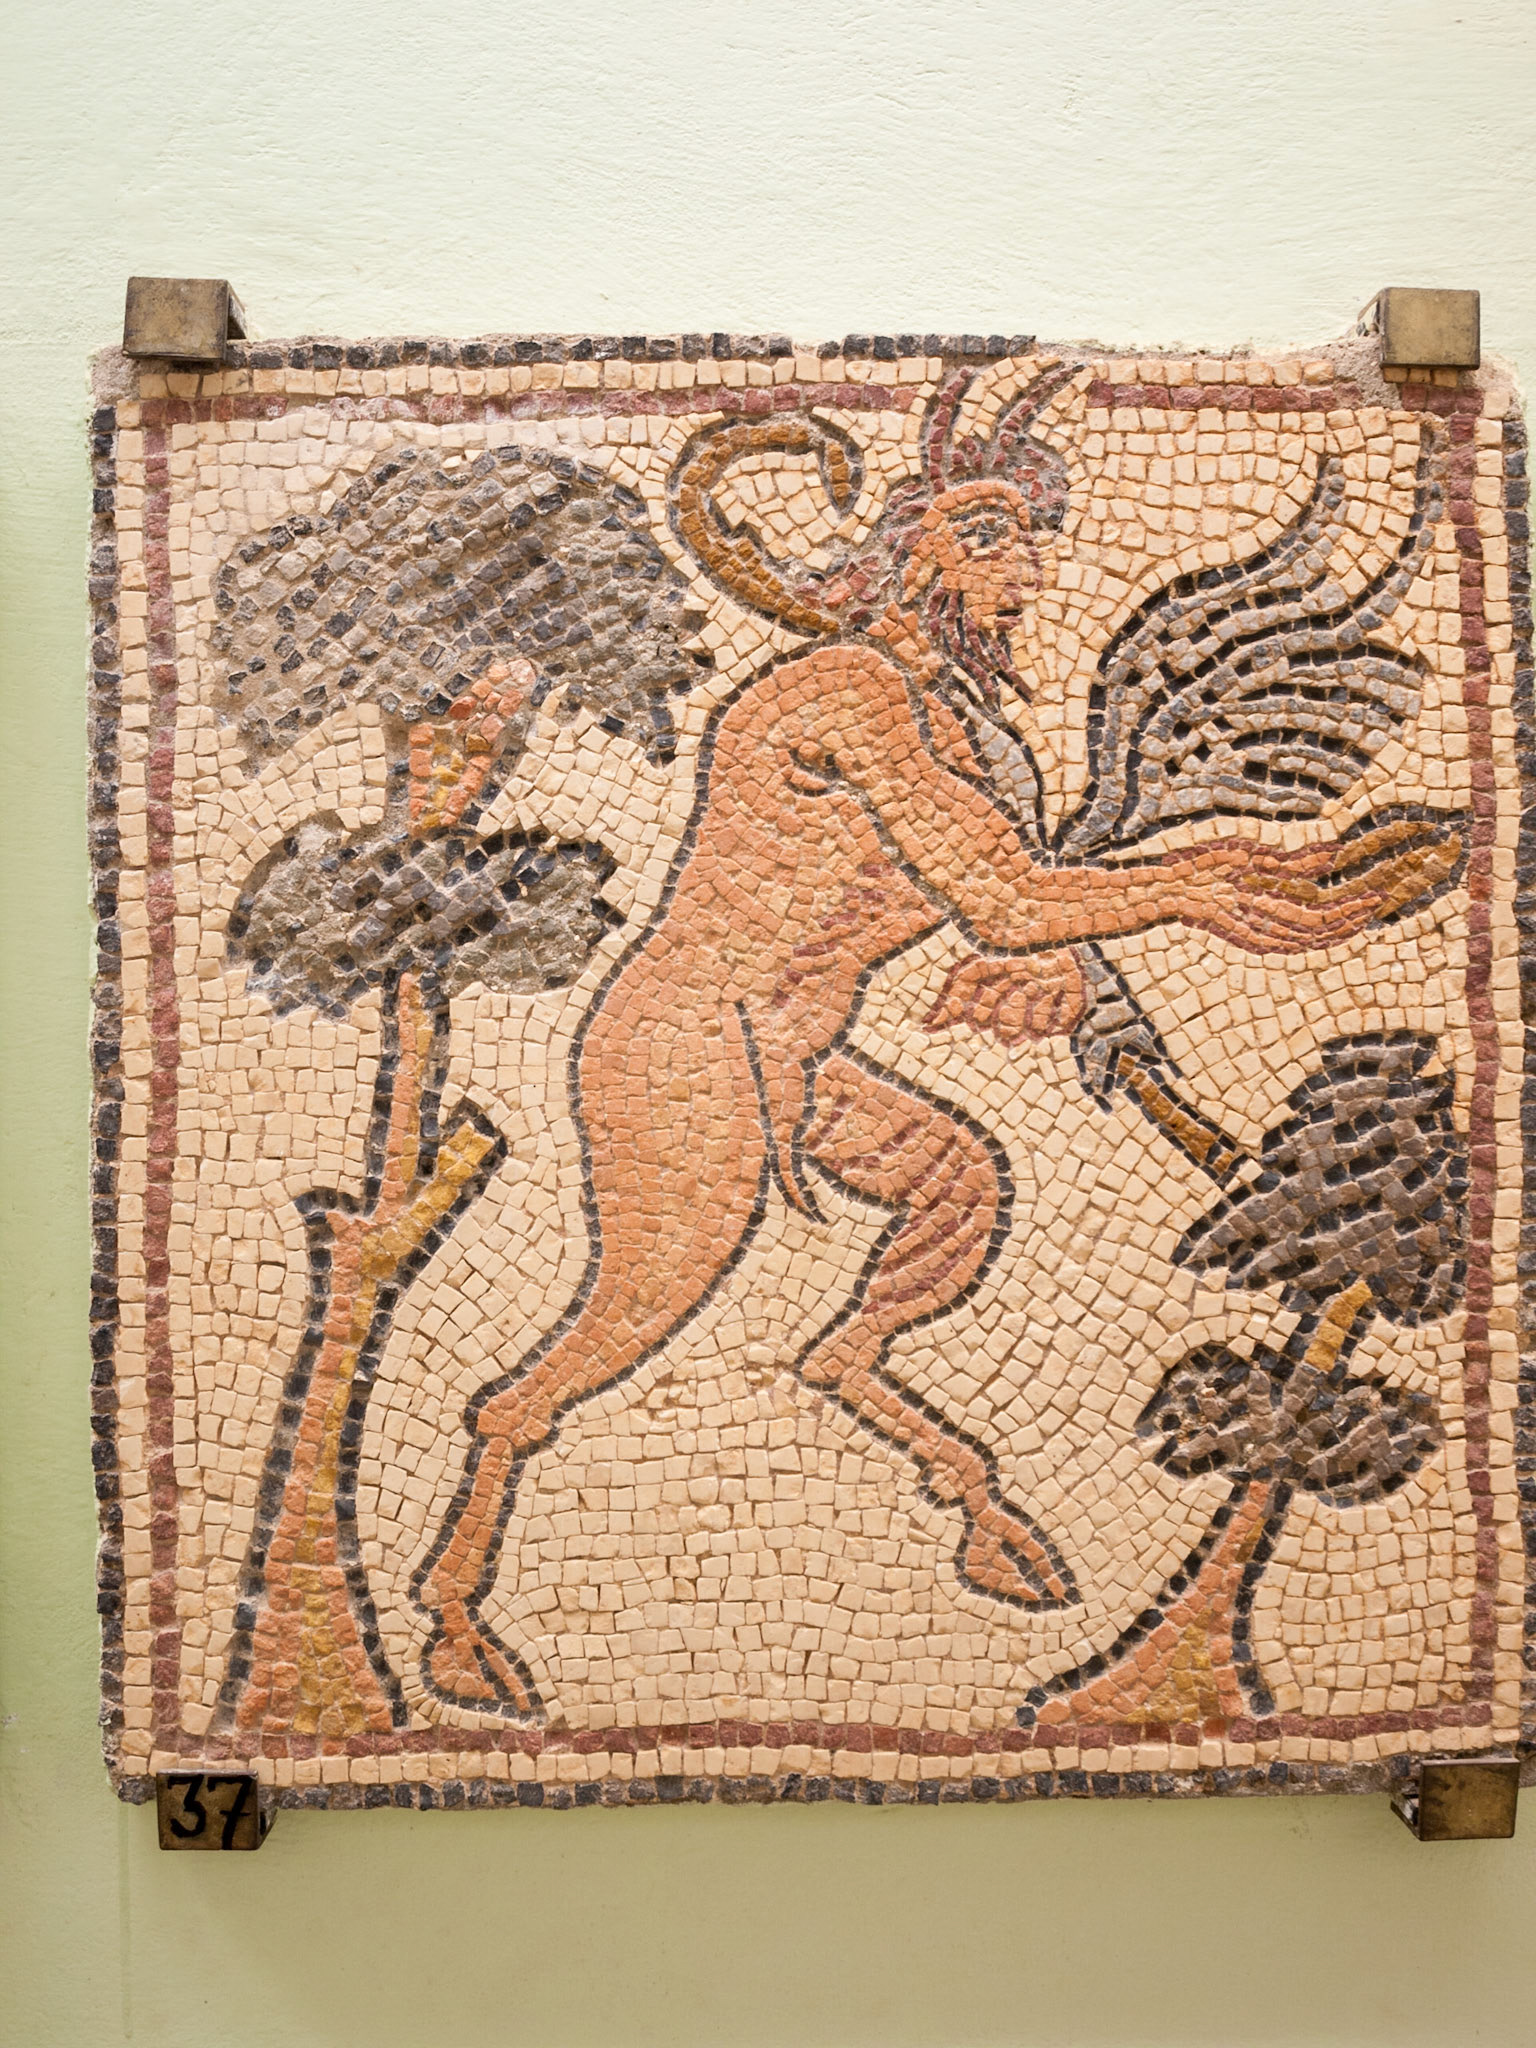 Что такое сатир в древней греции